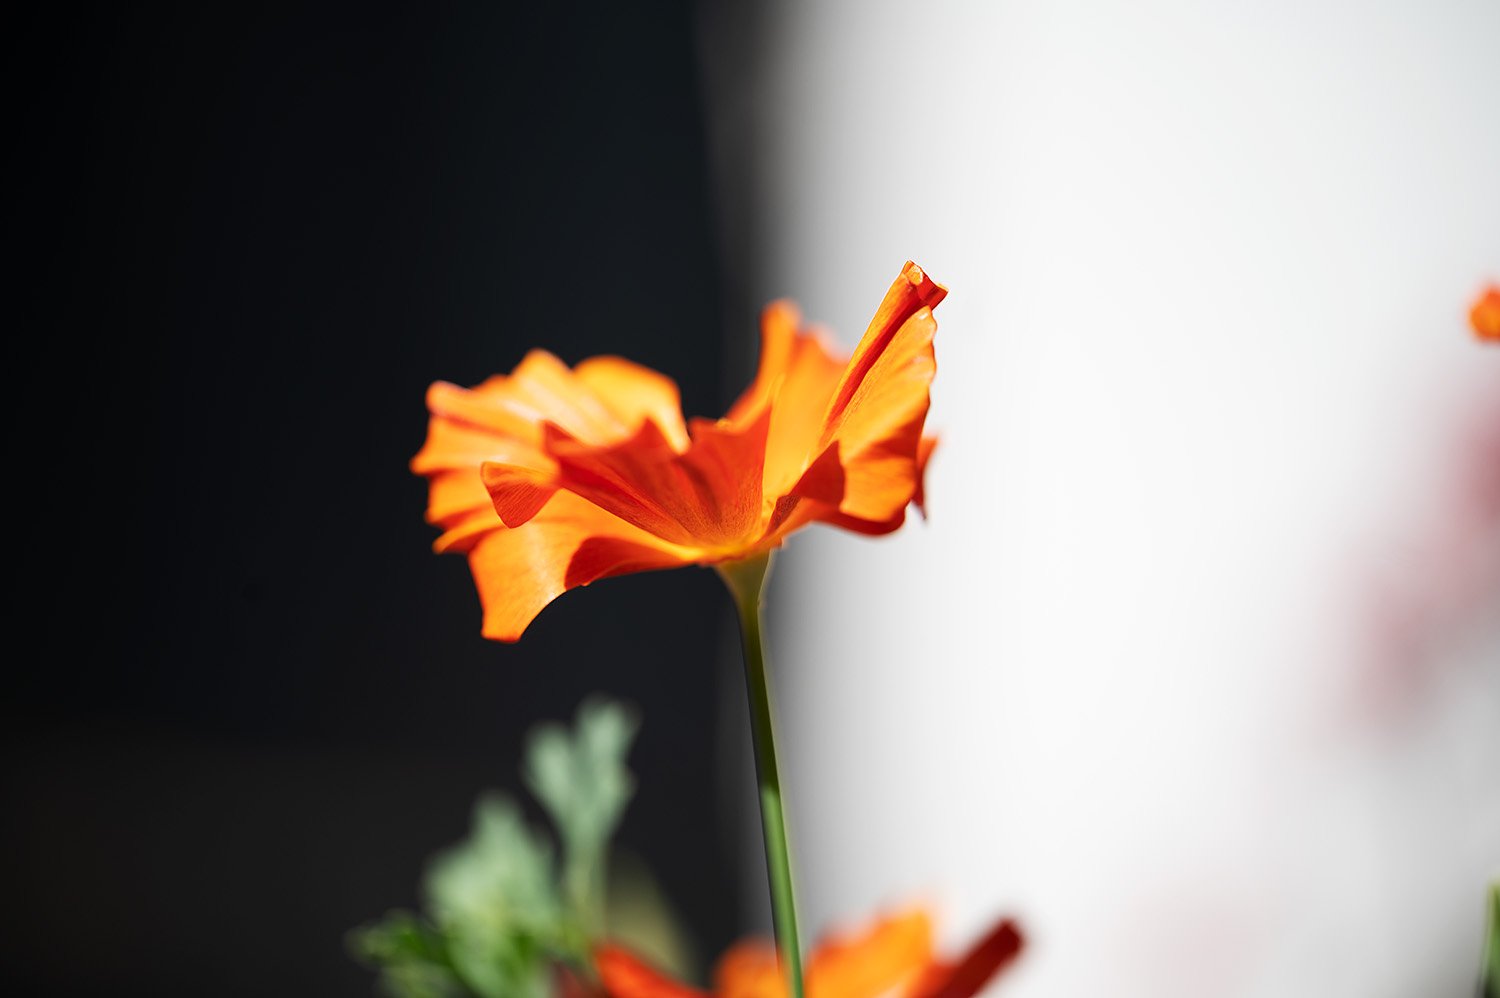  Eschscholzia californica - the California poppy. 